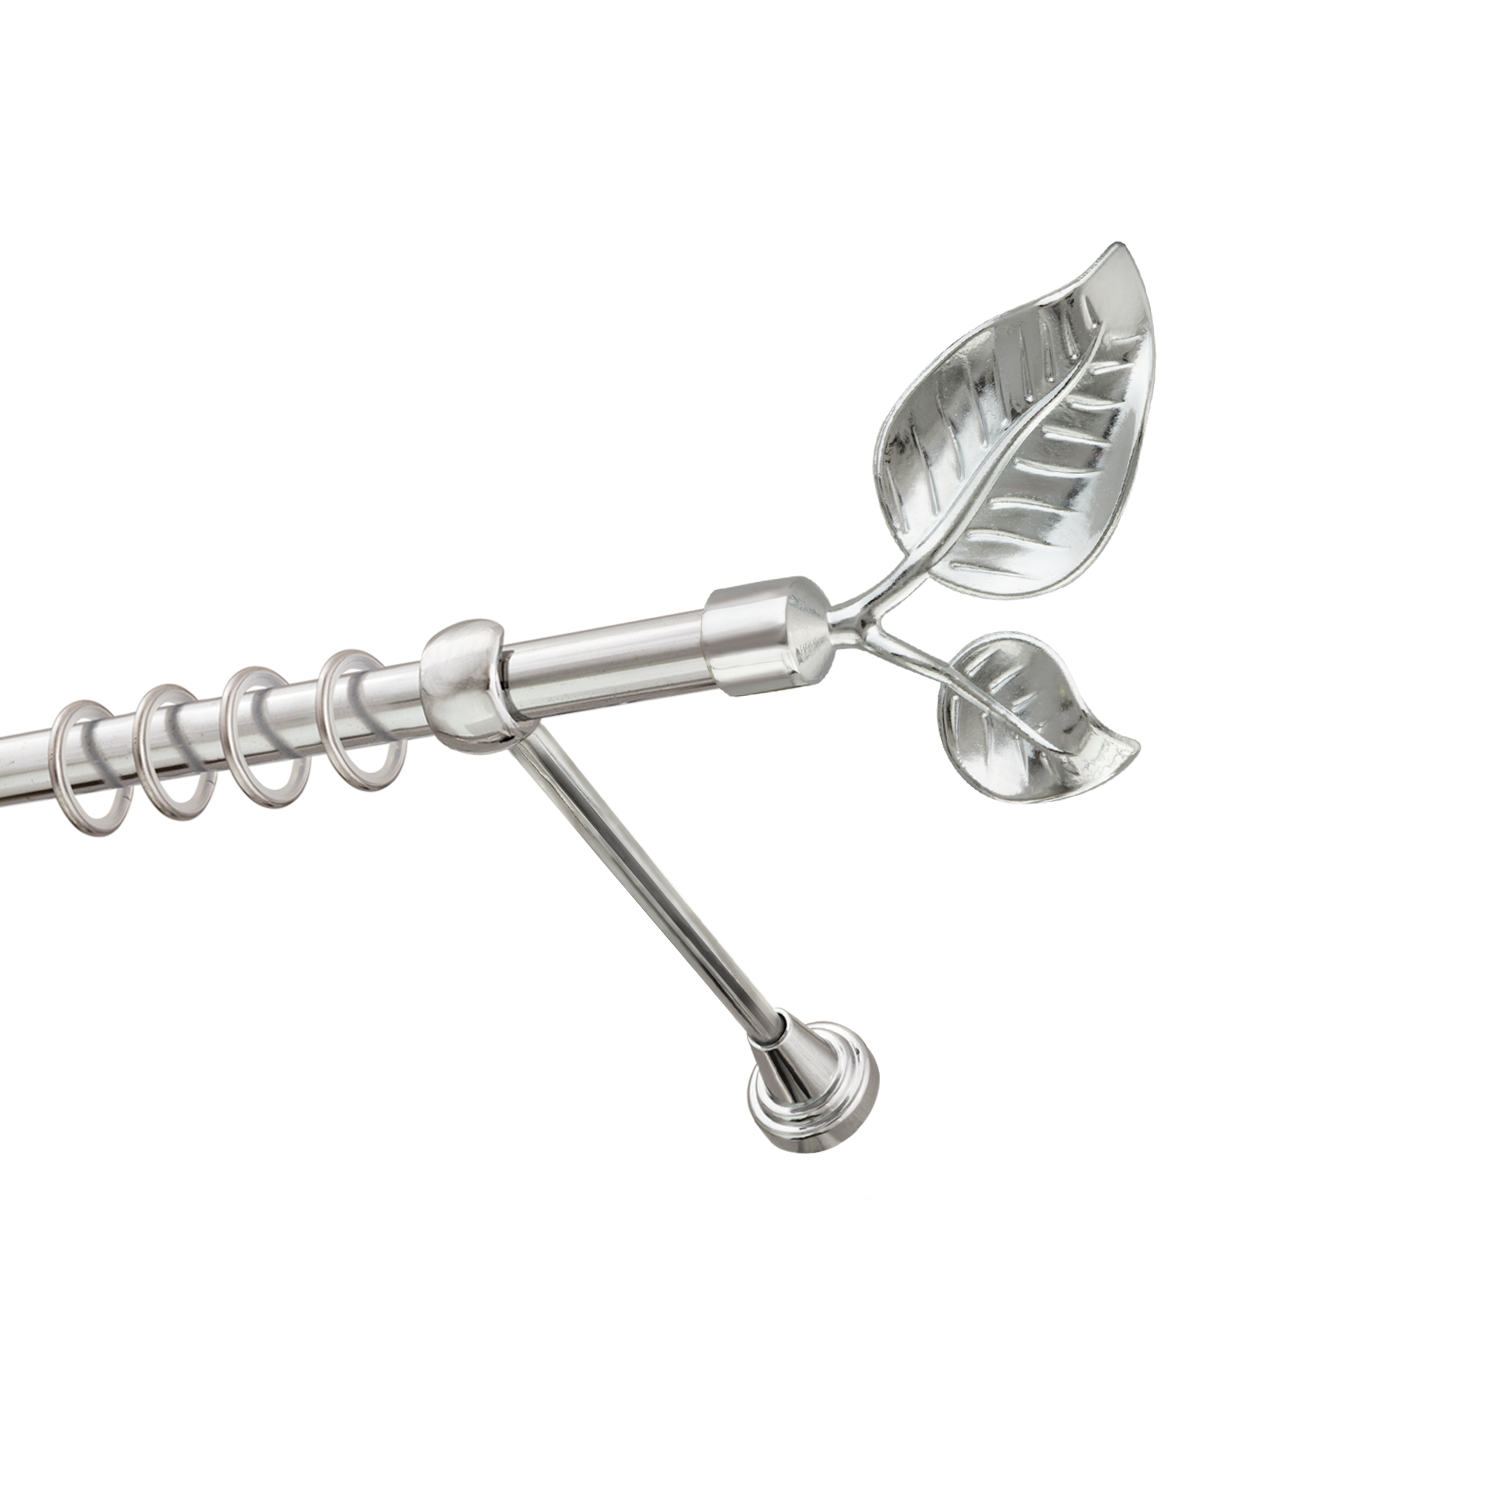 Металлический карниз для штор Тропик, однорядный 16 мм, серебро, гладкая штанга, длина 240 см - фото Wikidecor.ru